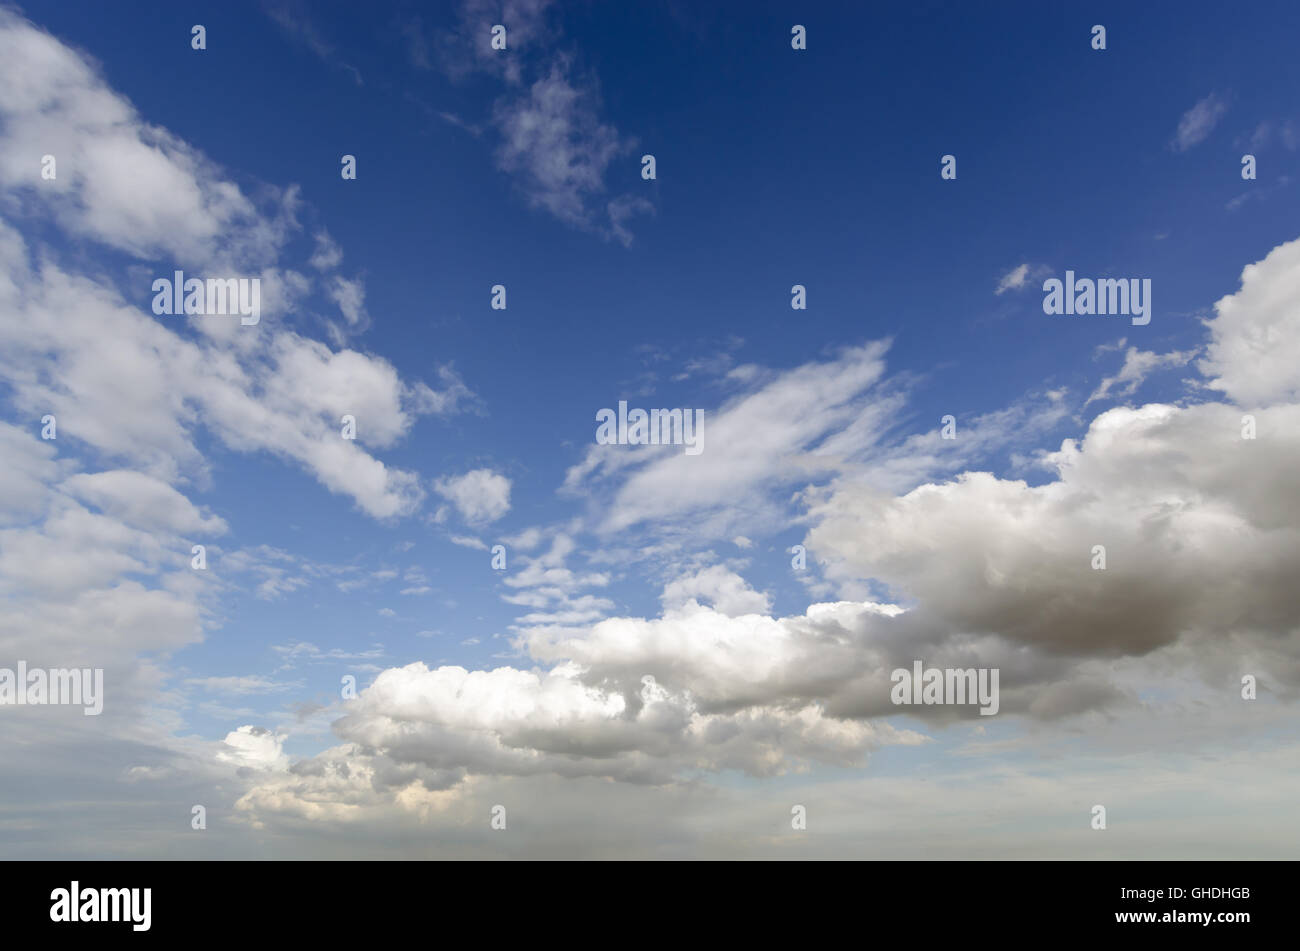 Nuvole bianche oltre il cielo blu chiaro con uno spazio vuoto per l'invio di messaggi di testo Foto Stock